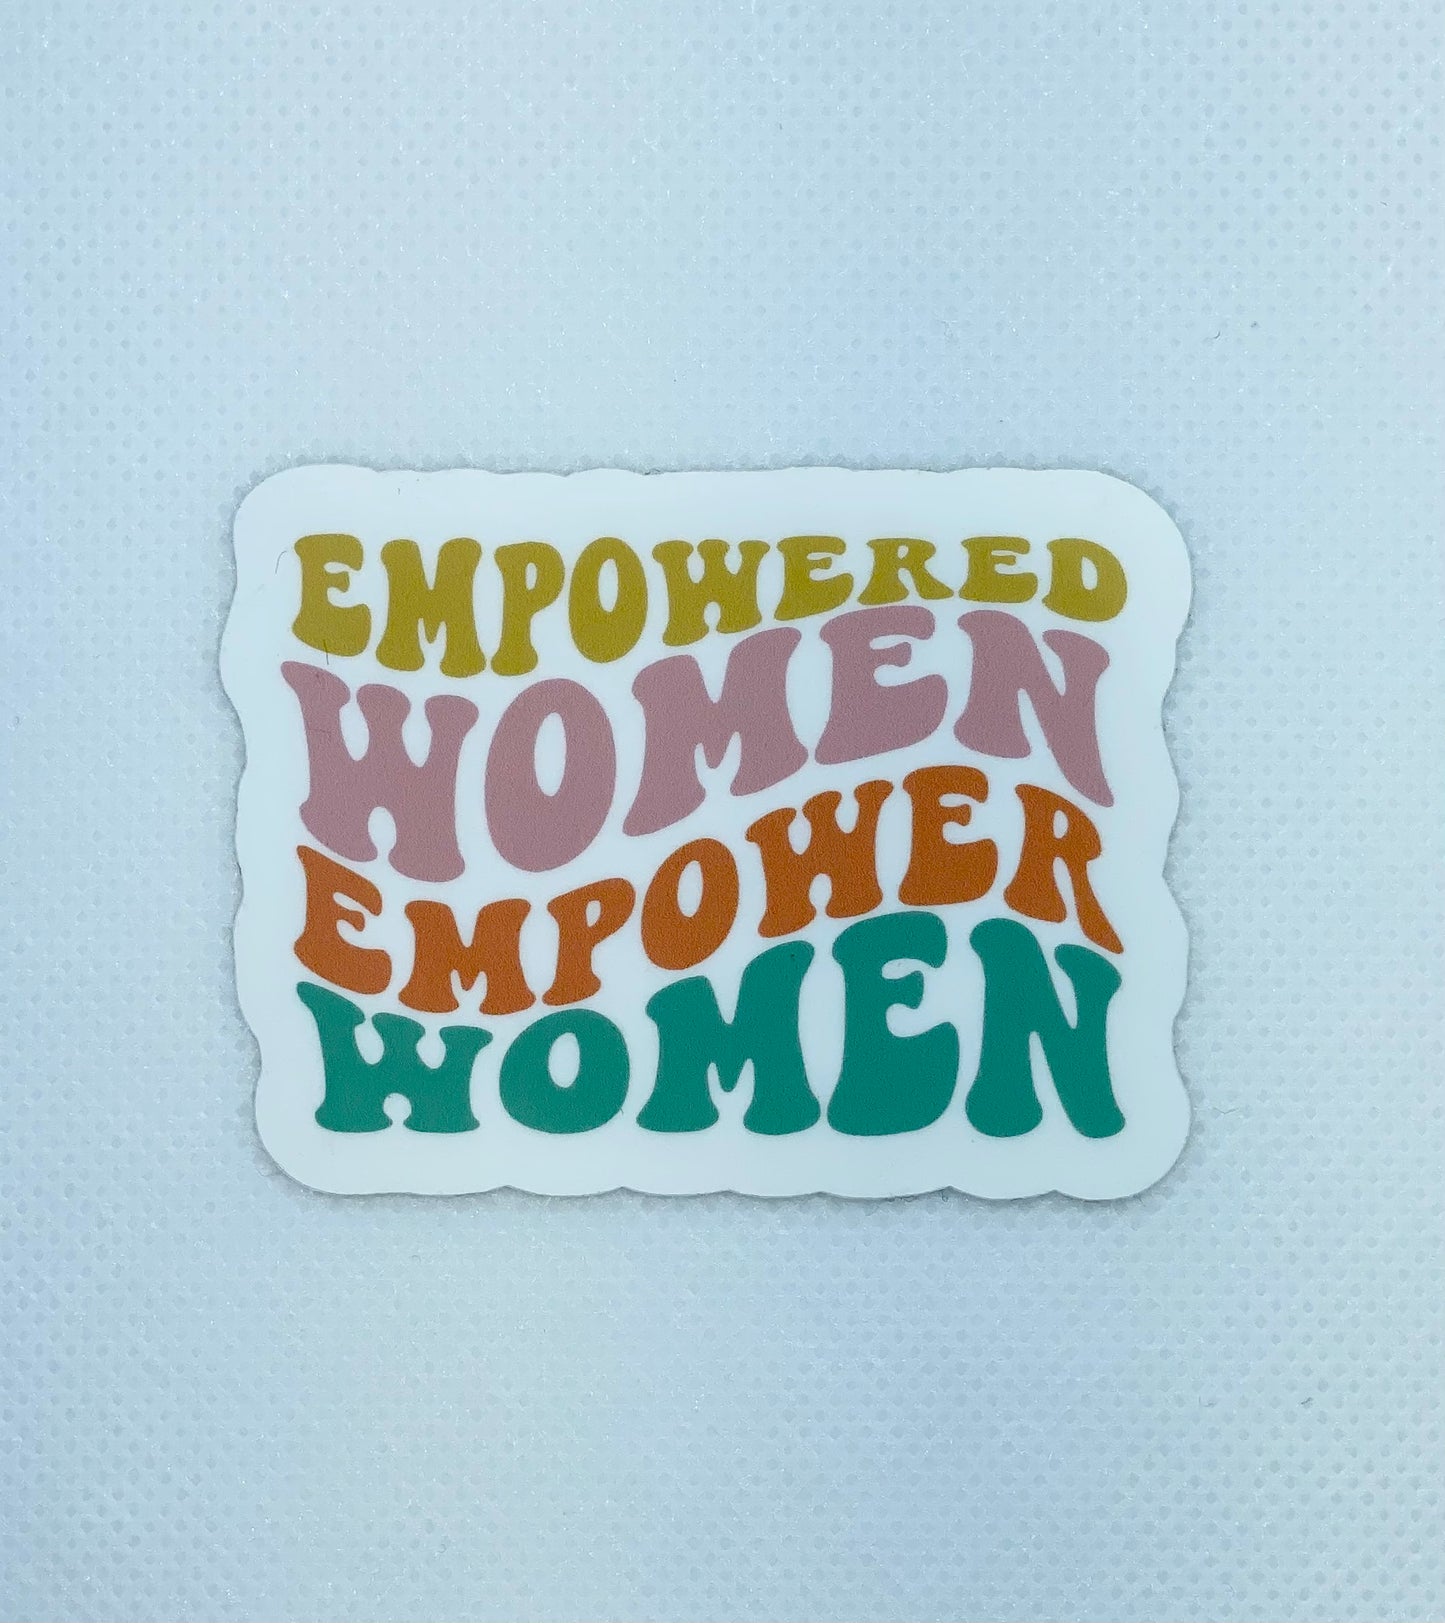 Empowered Women Small Sticker